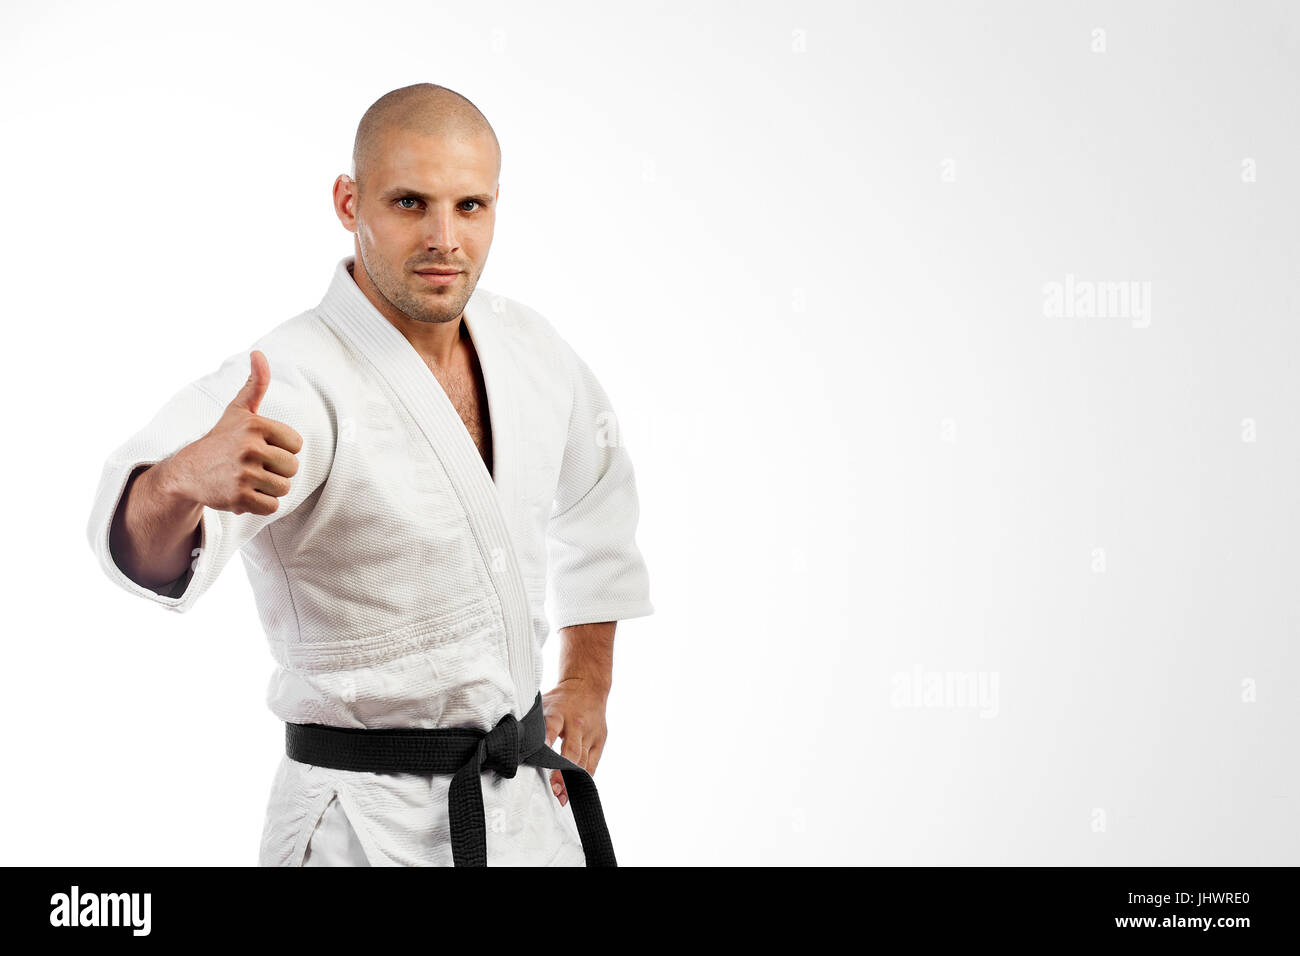 Jeune homme fighter dans un kimono blanc avec ceinture noire pour le judo,  le jiu-jitsu posant sur un fond blanc, tenant un thumb up Photo Stock -  Alamy